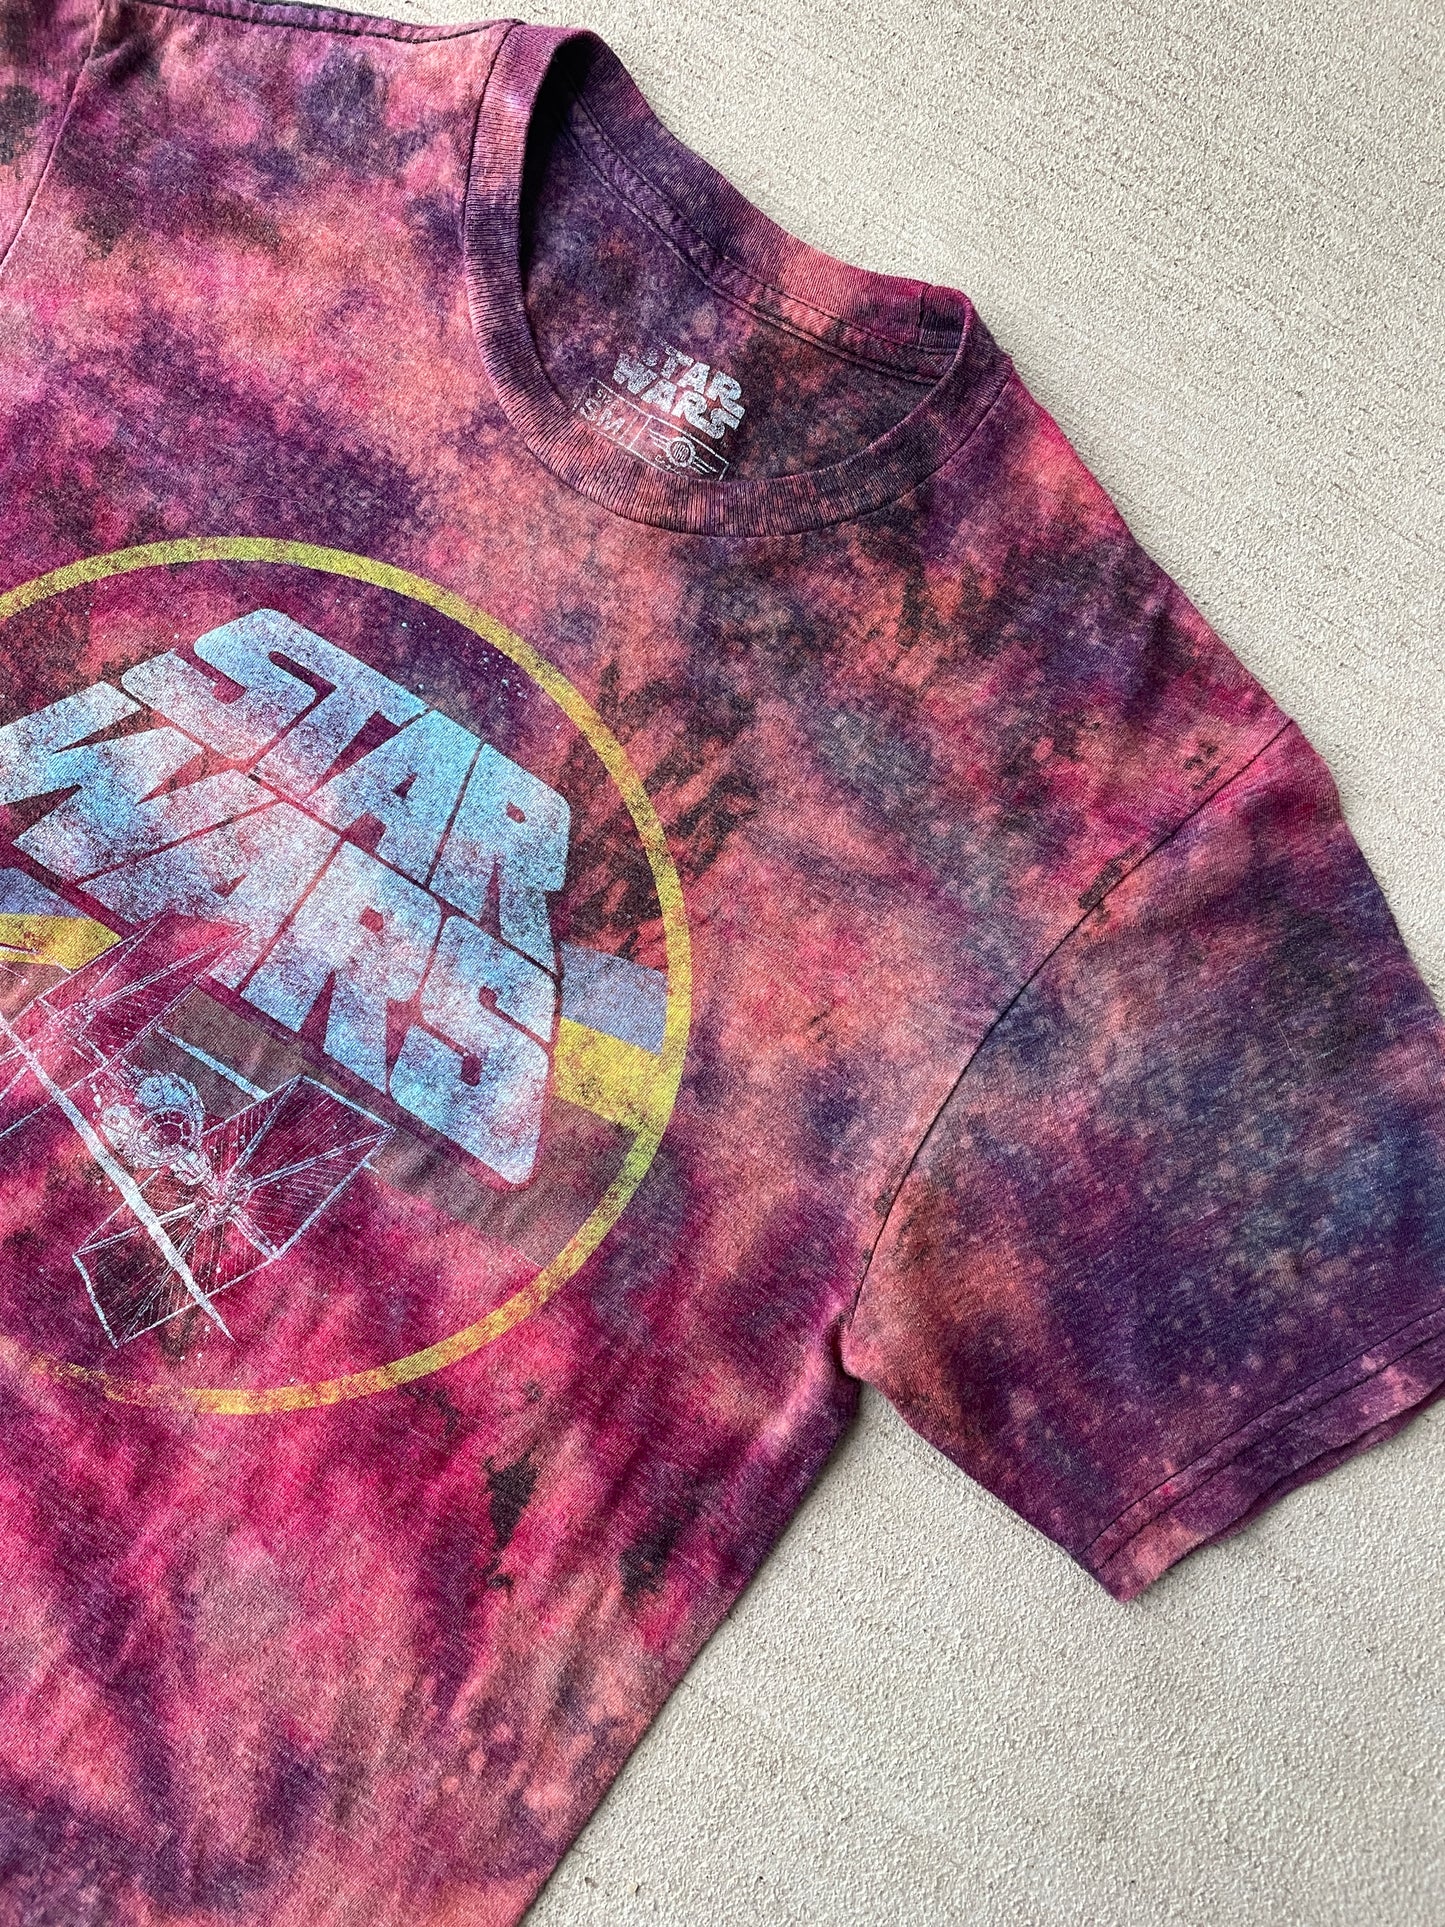 Small Men’s Star Wars Galaxy Dye Handmade Tie Dye T-Shirt | Reverse Galaxy Tie Dye Short Sleeve